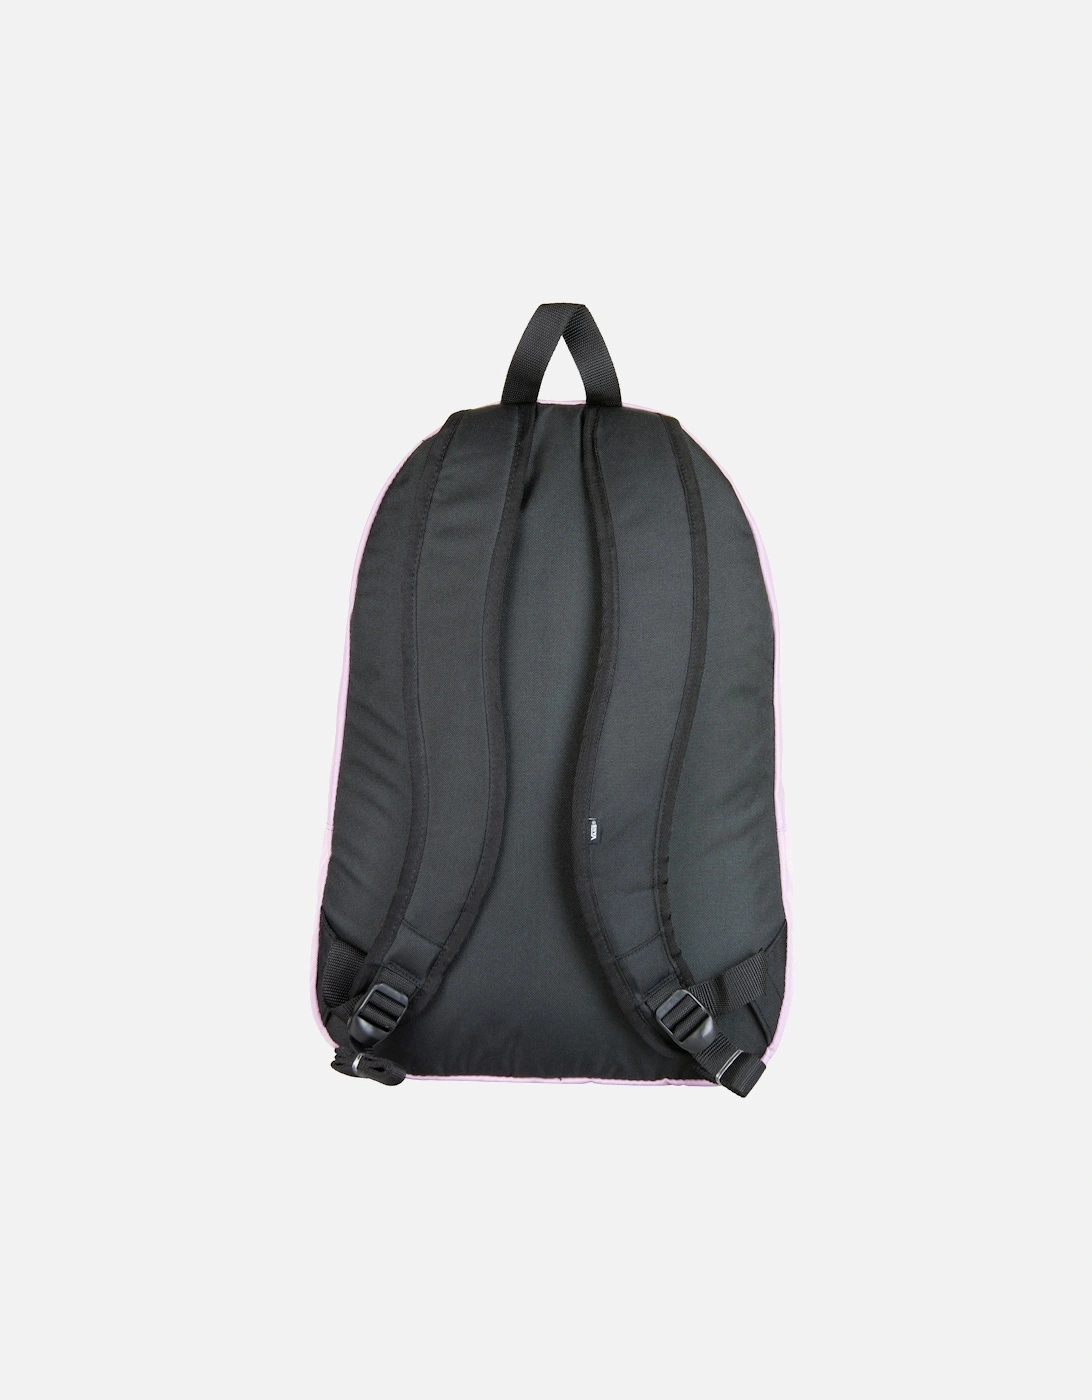 Ranged 2 Printed Backpack (Lavender)